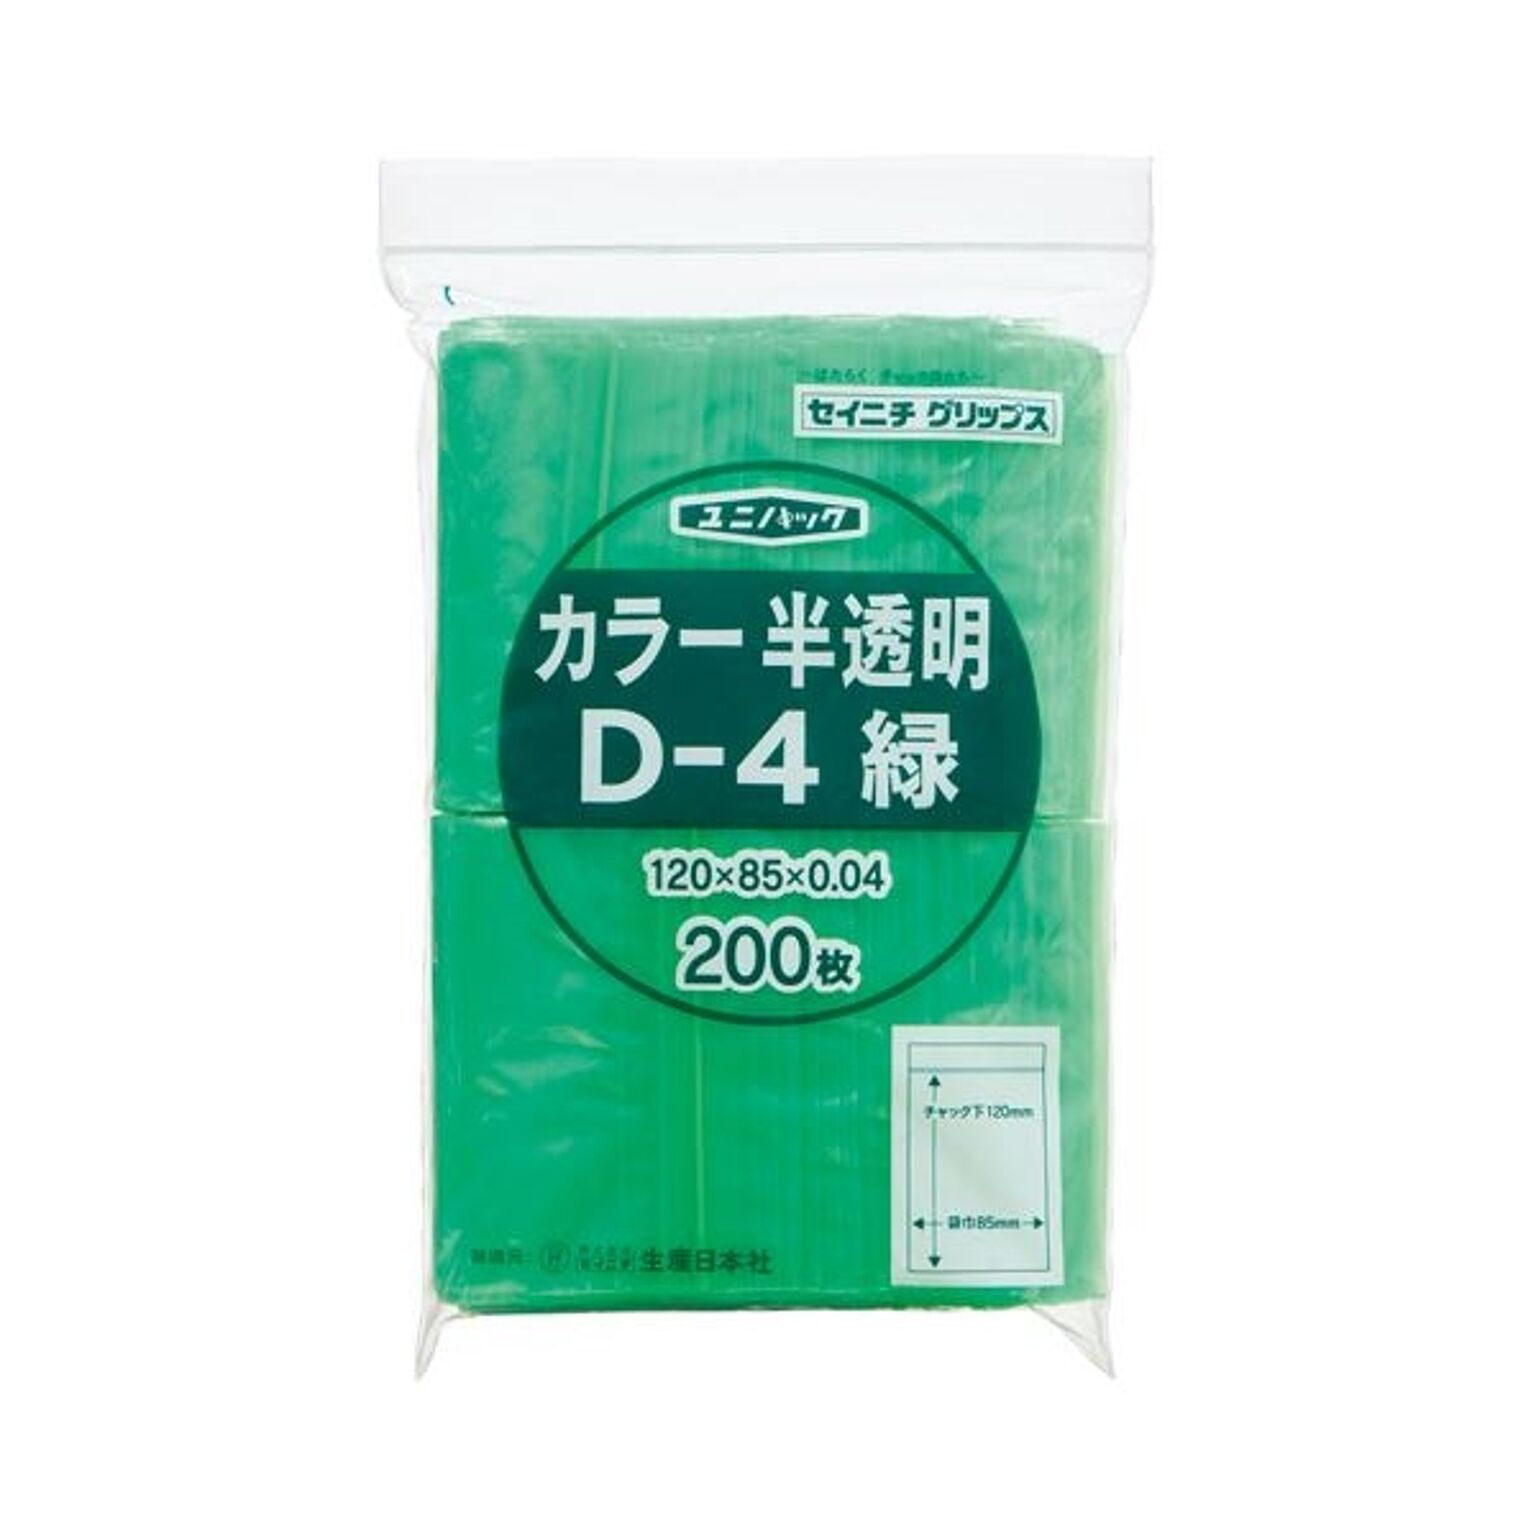 (まとめ) セイニチ チャック付袋 ユニパックカラー 半透明 ヨコ85×タテ120×厚み0.04mm 緑 D-4ミドリ 1パック(200枚) ×5セット